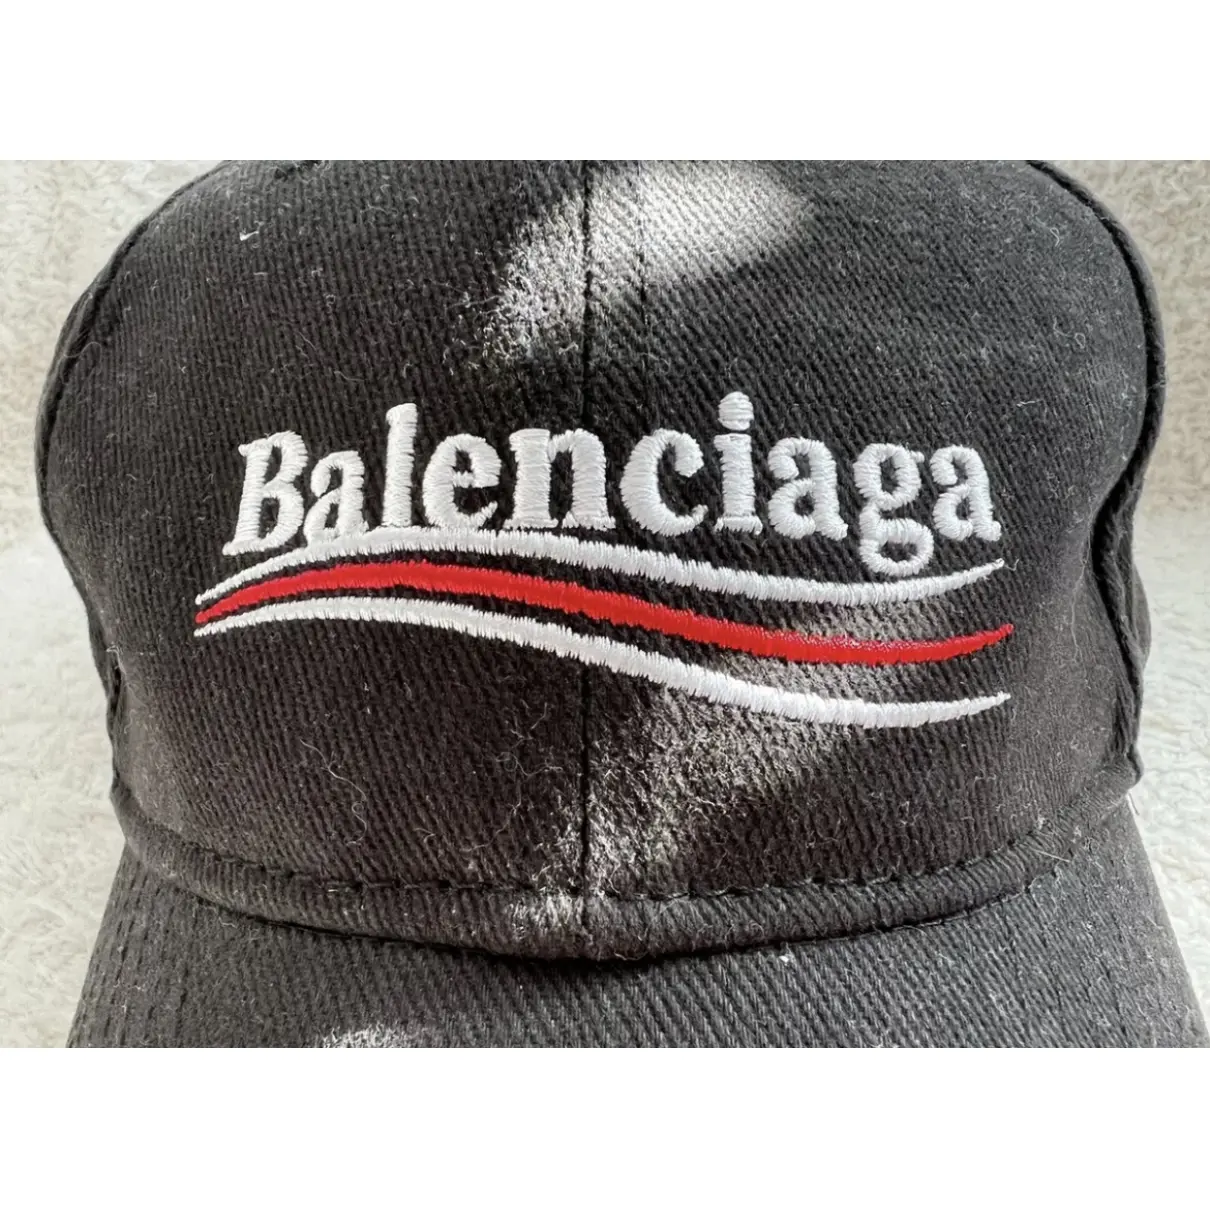 Buy Balenciaga Cap online